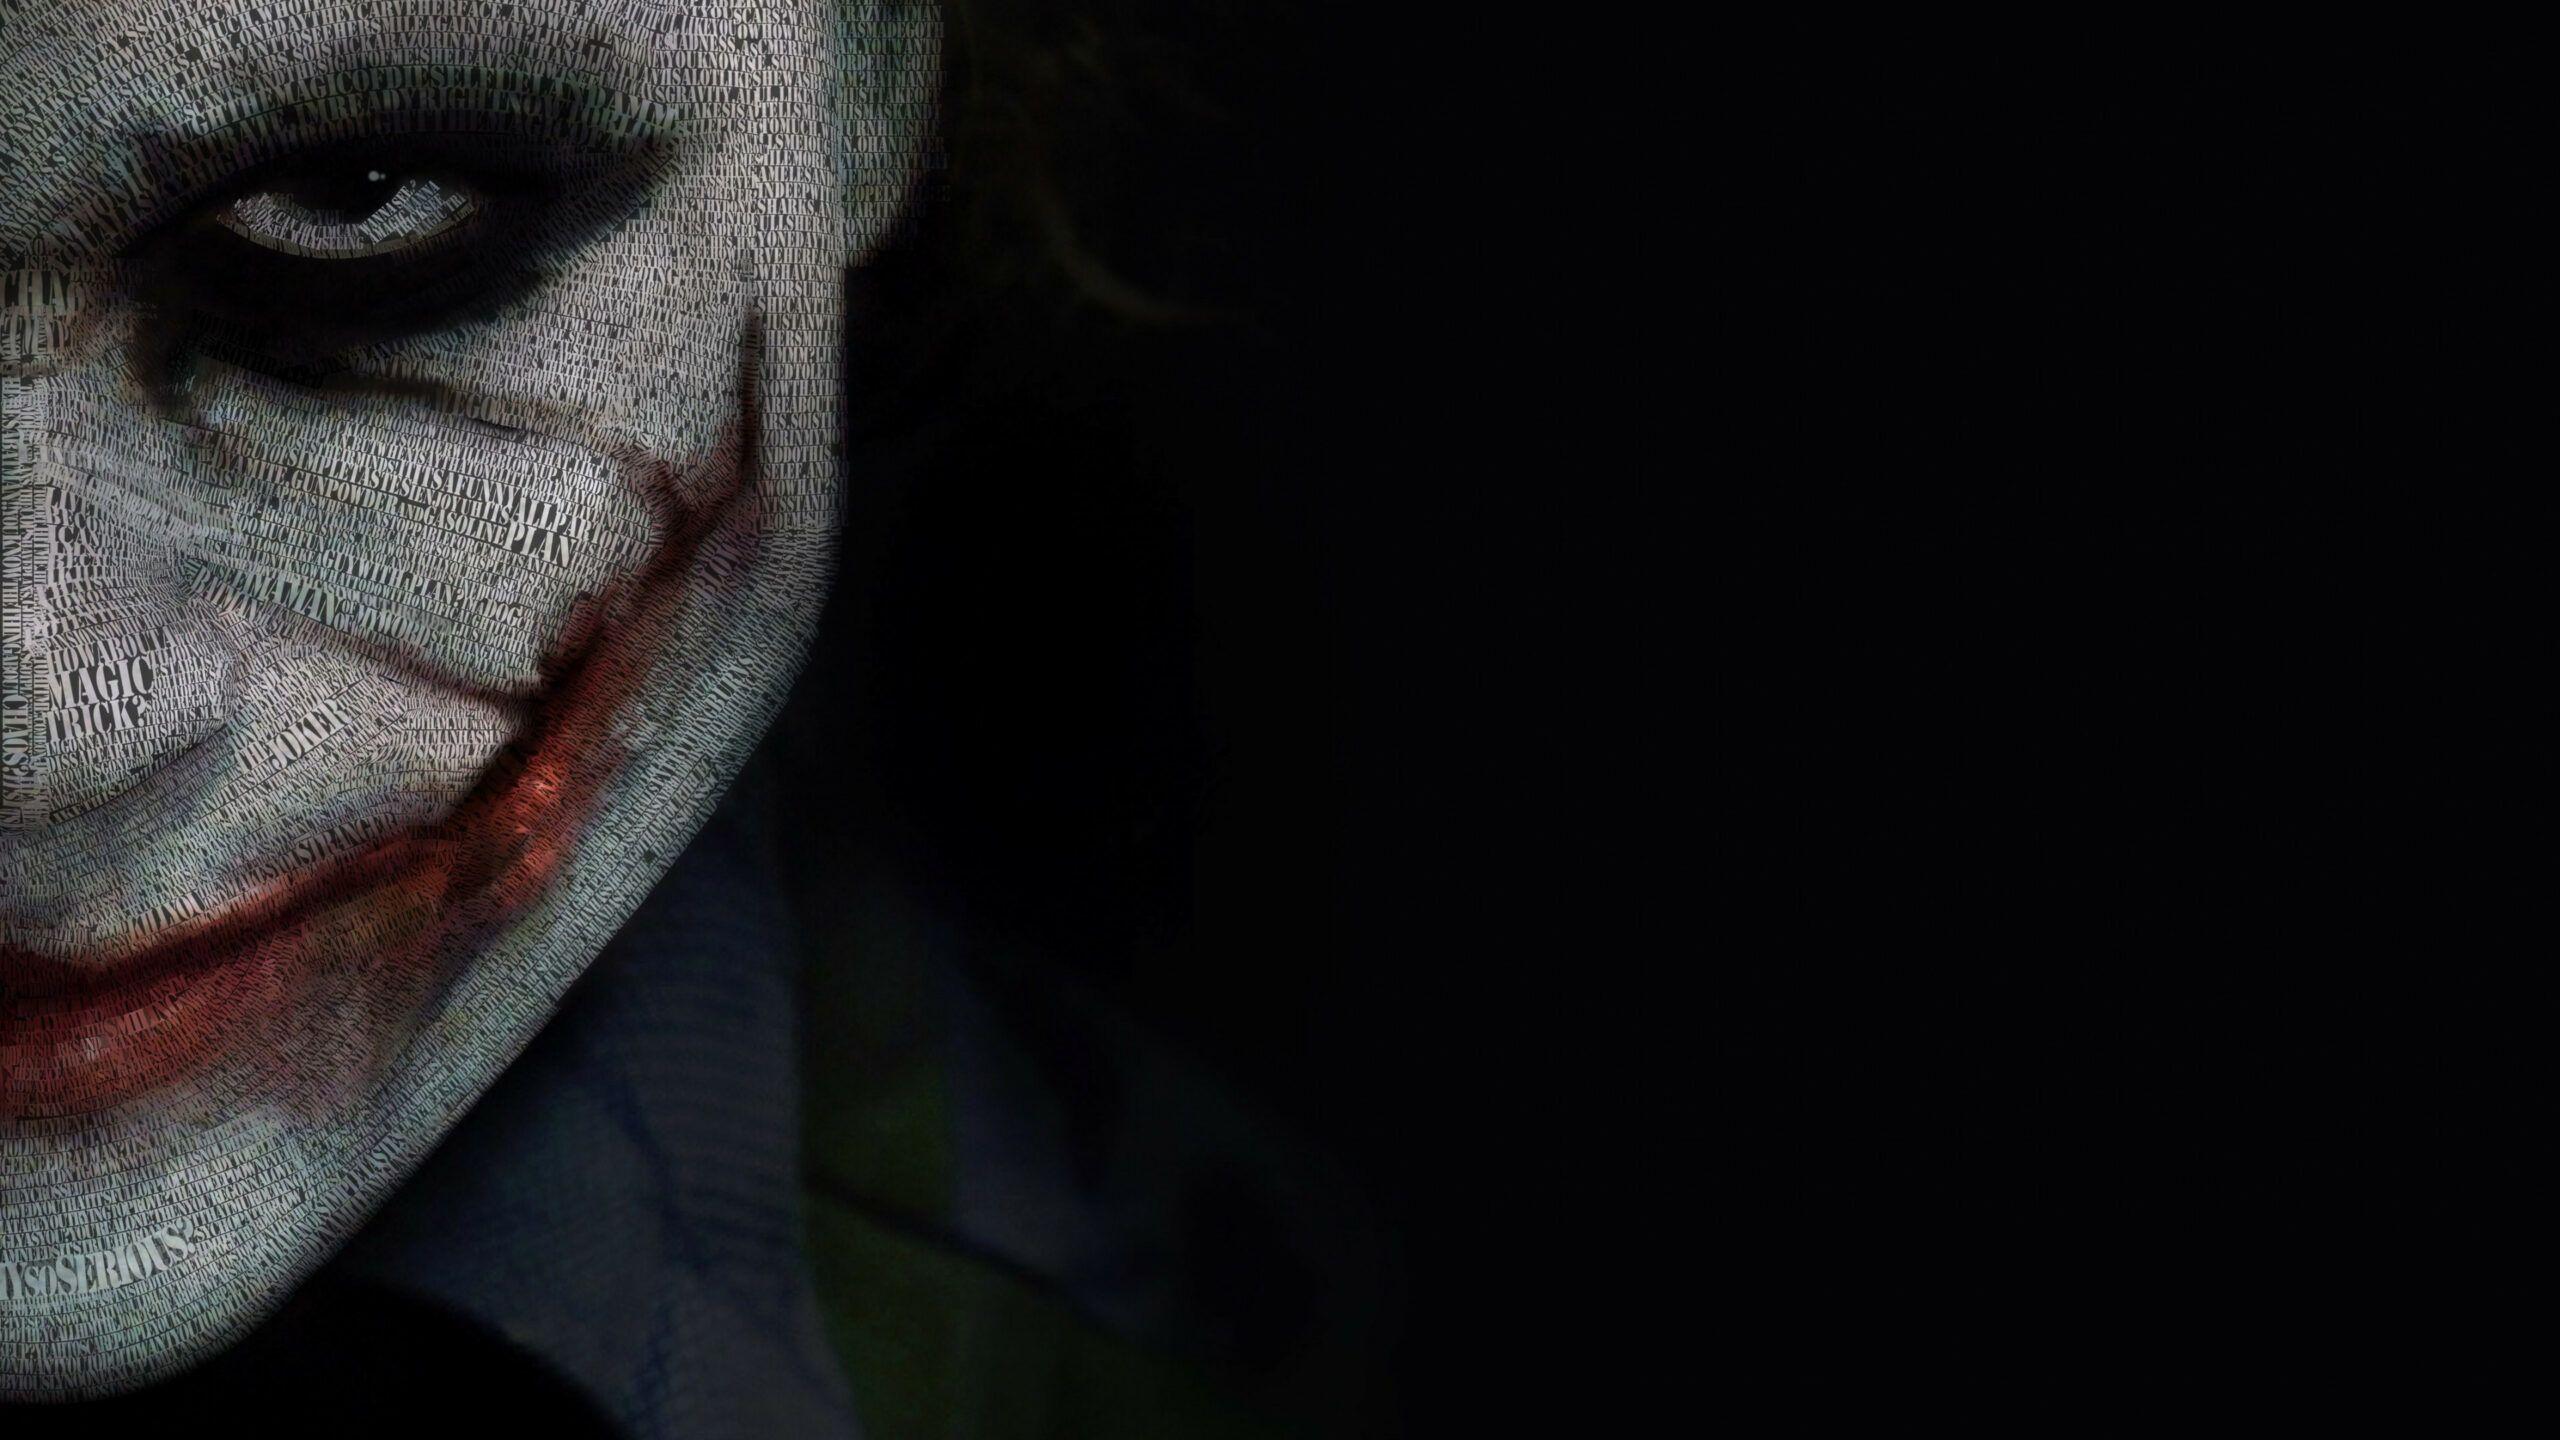 2560x1440 Joker 4k Ultra HD Wallpaper Tải xuống.  Hình ảnh Joker, Hình nền 4k cho điện thoại di động, Hình nền Joker HD